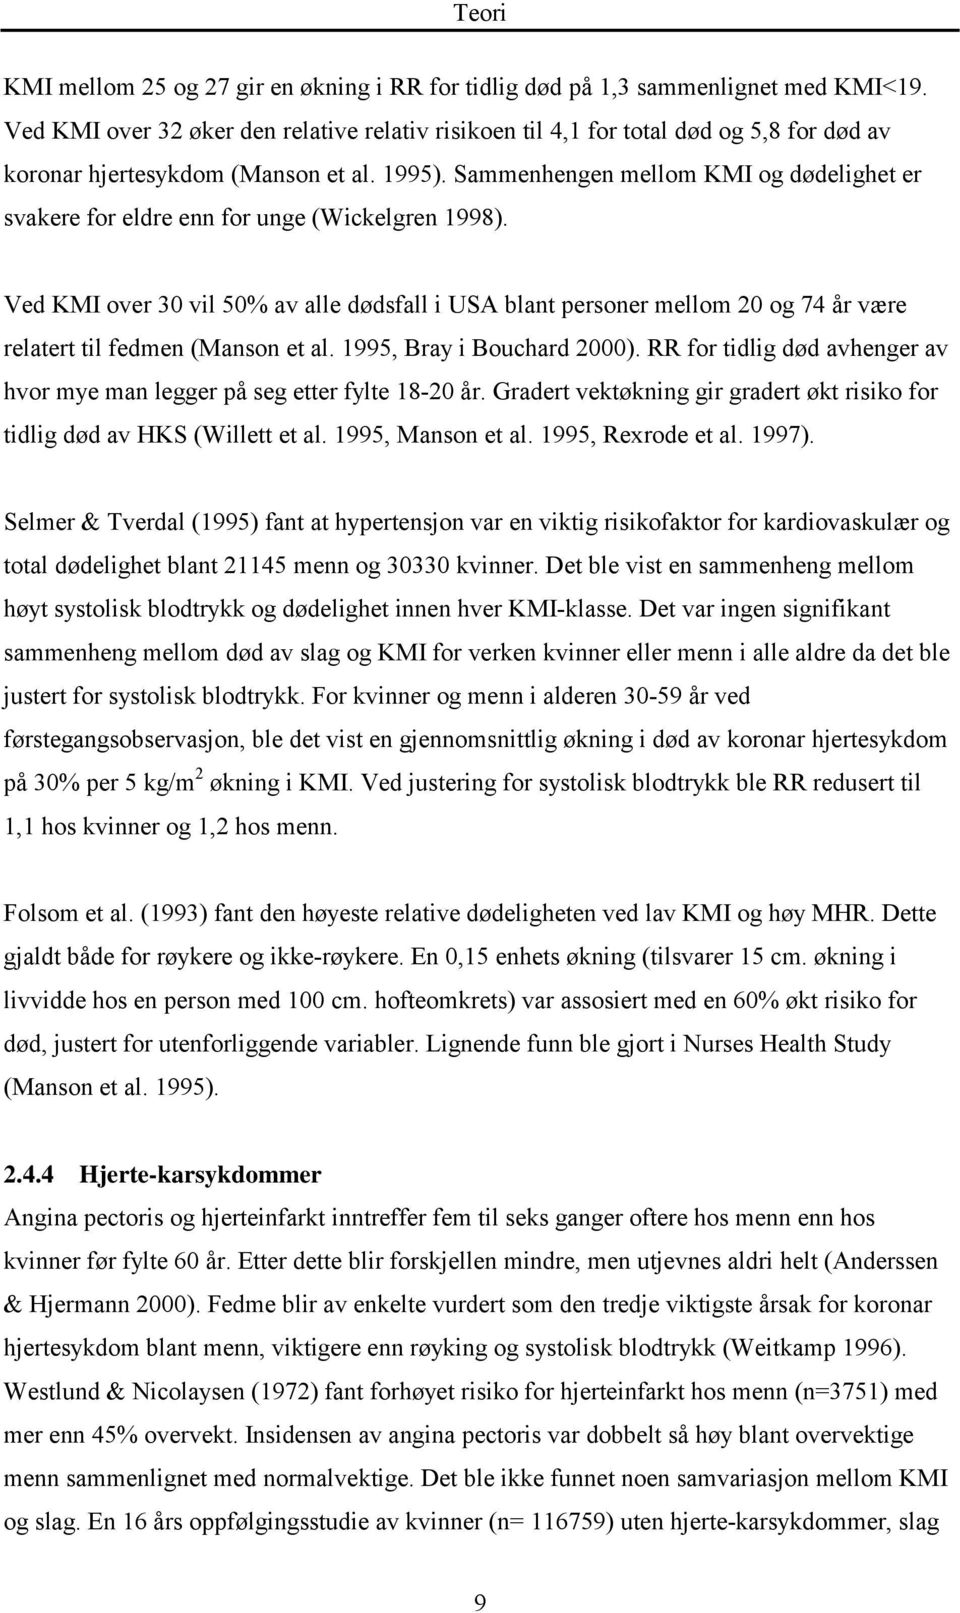 Sammenhengen mellom KMI og dødelighet er svakere for eldre enn for unge (Wickelgren 1998).